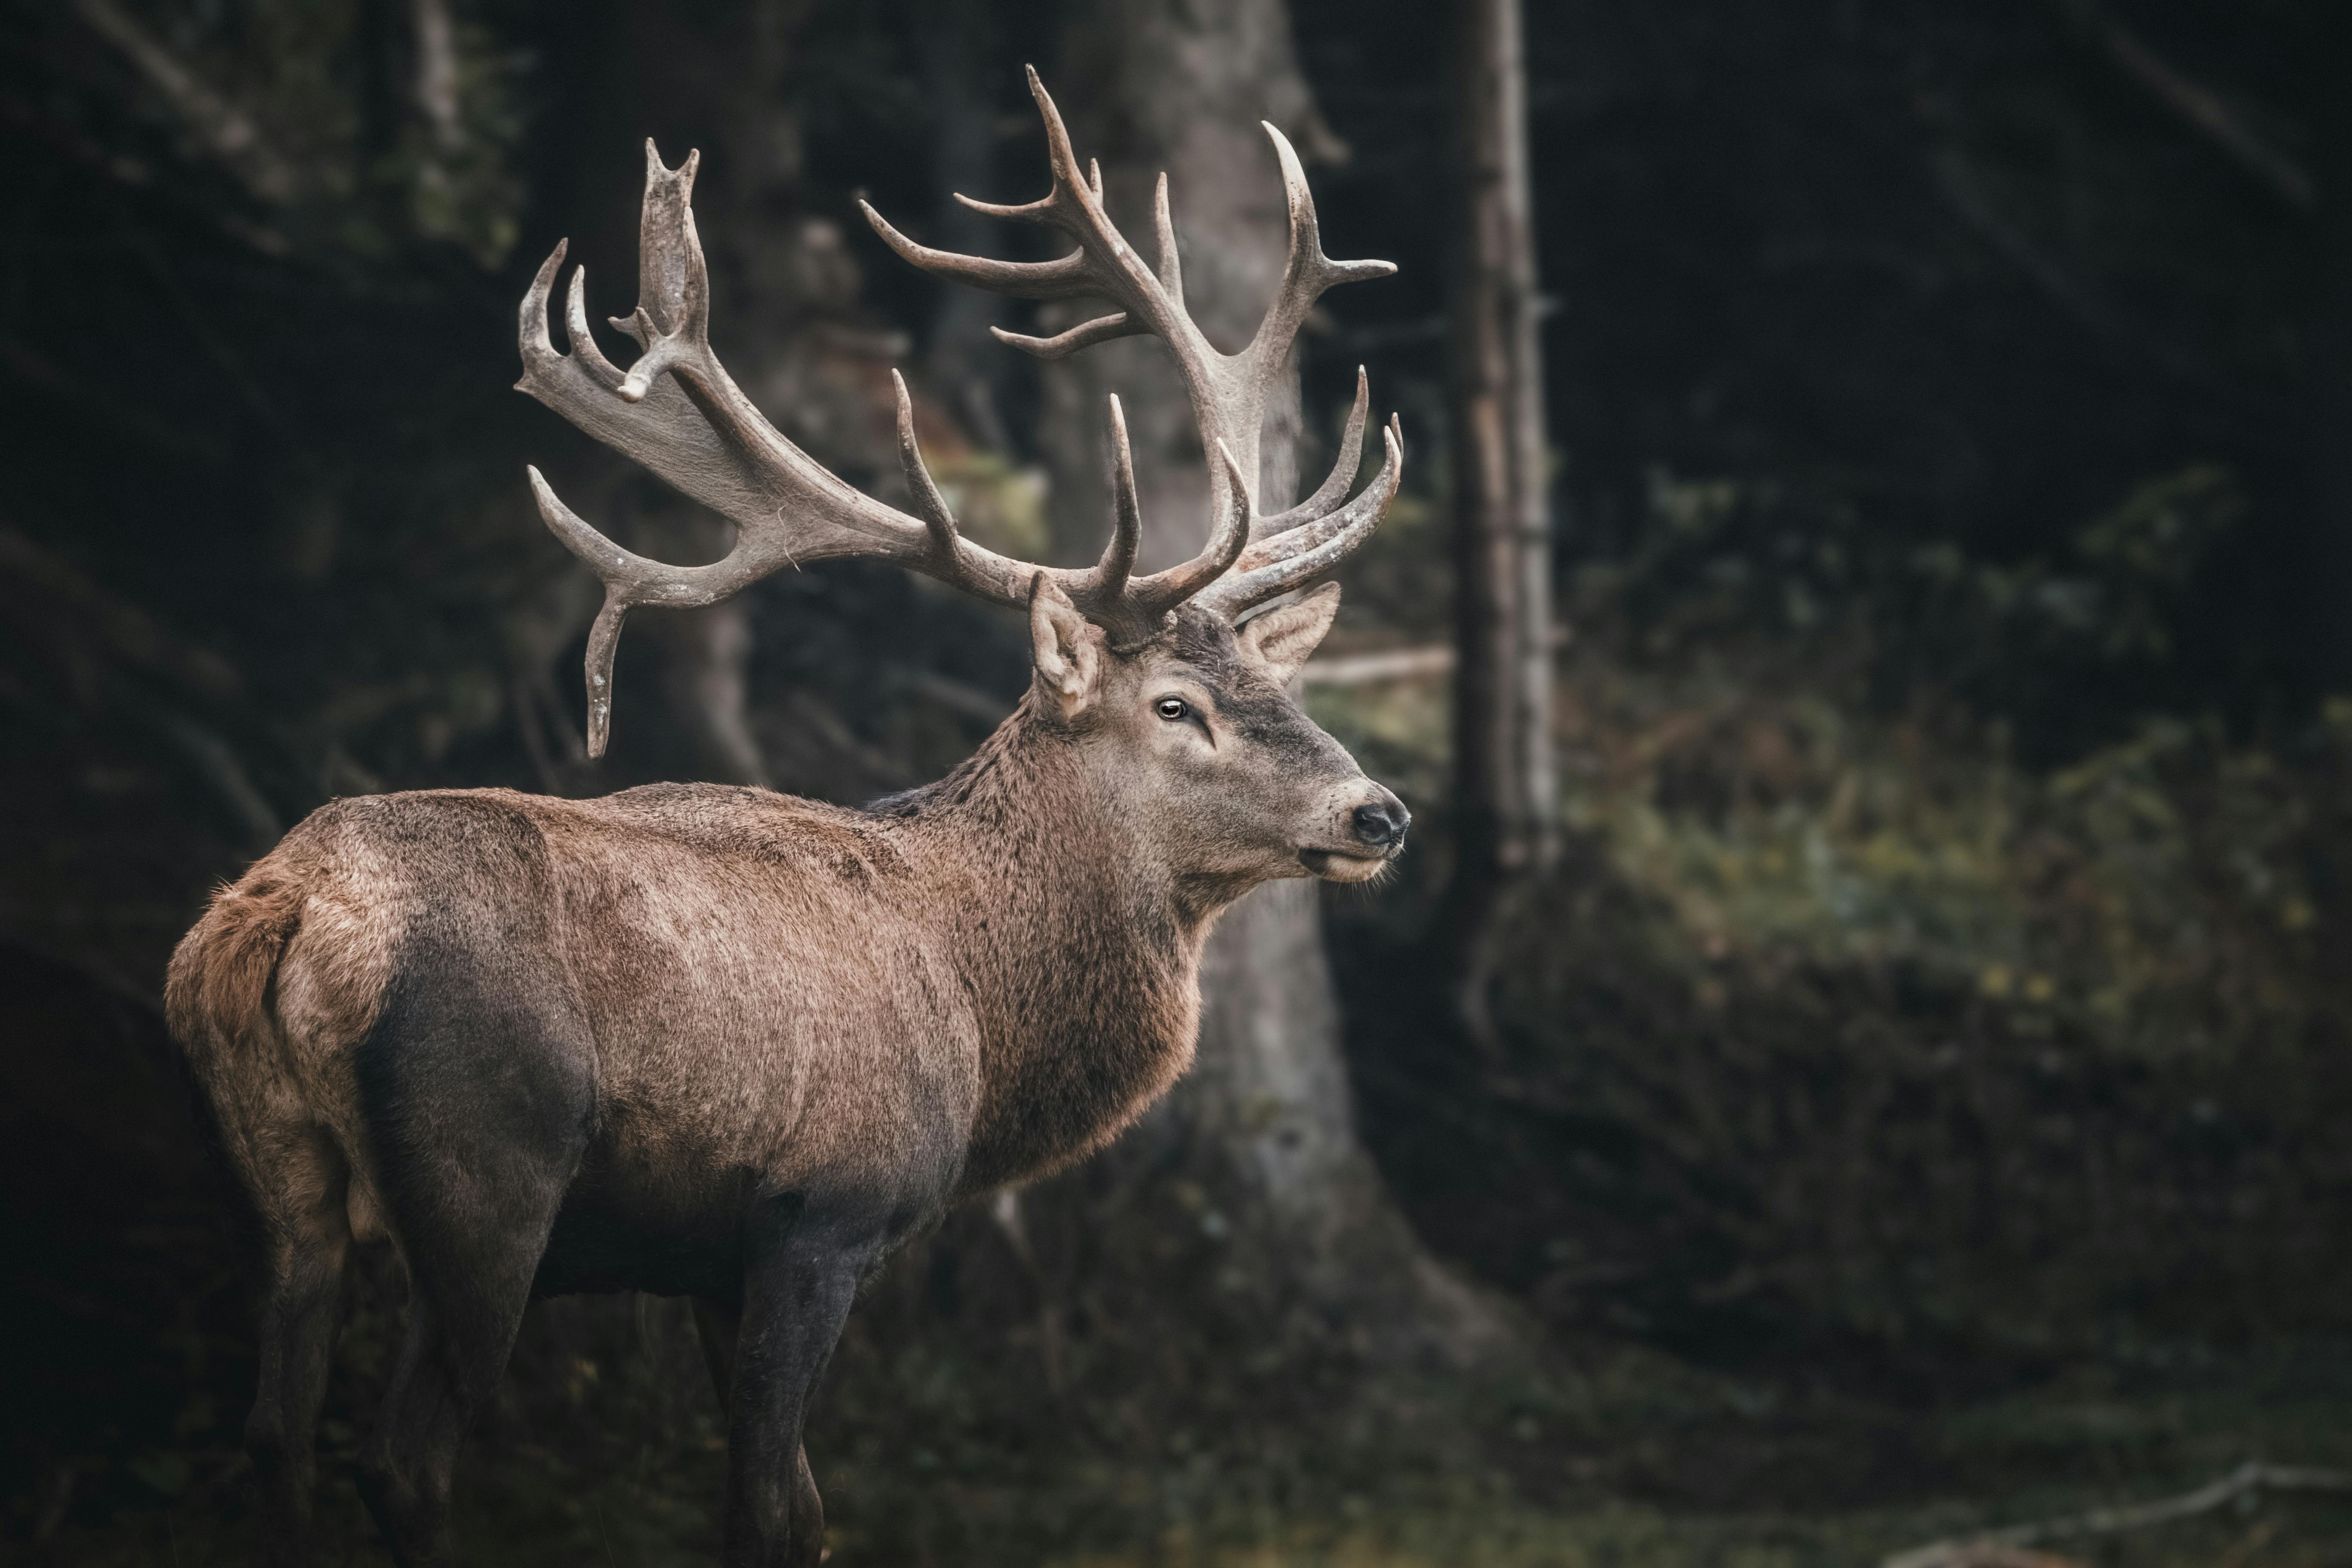 2,000+ Best Deer Photos · 100% Free Download · Pexels Stock Photos